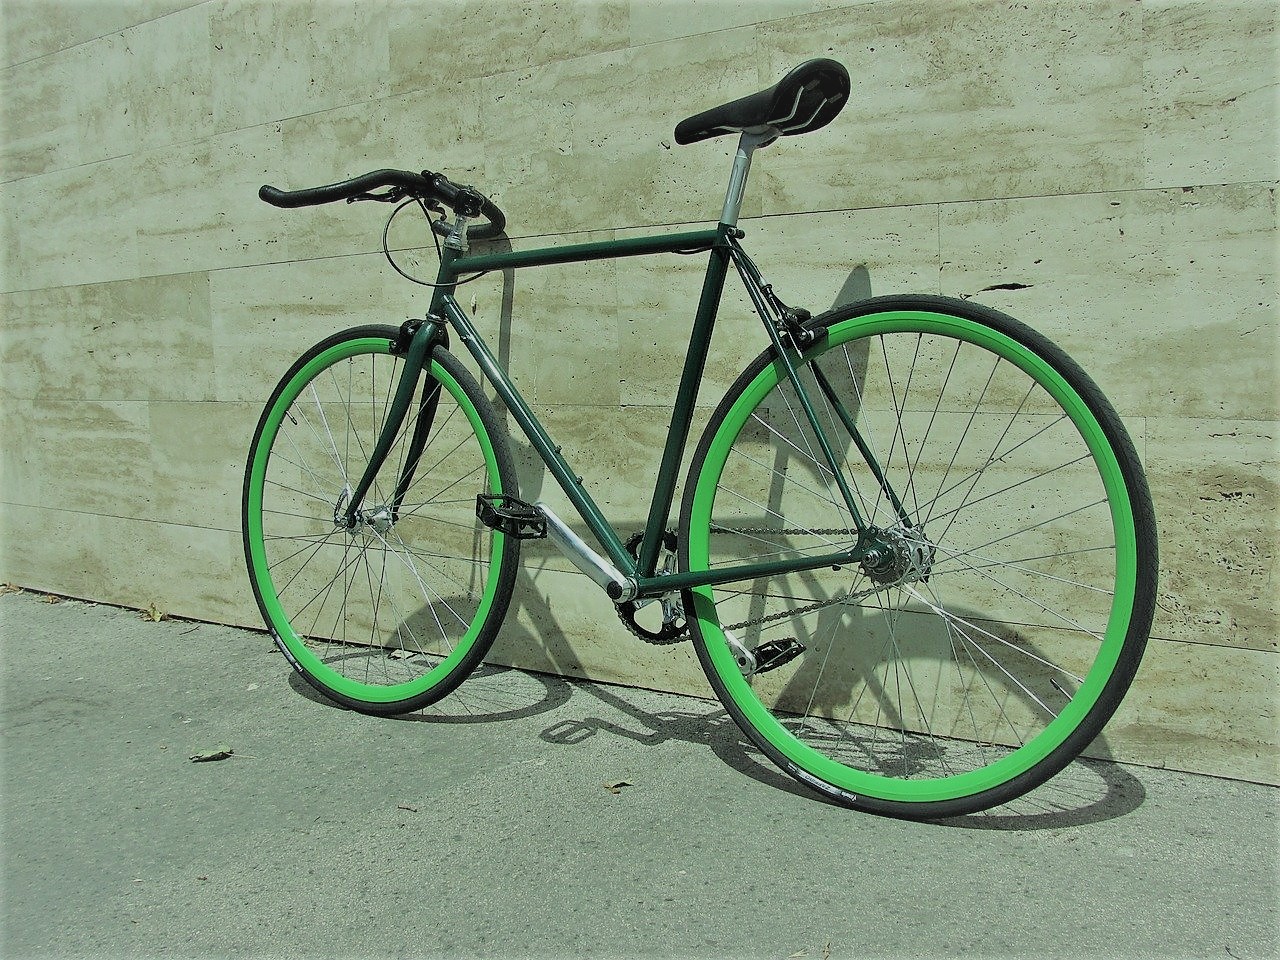 fixie bike vs single-speed freewheel bike